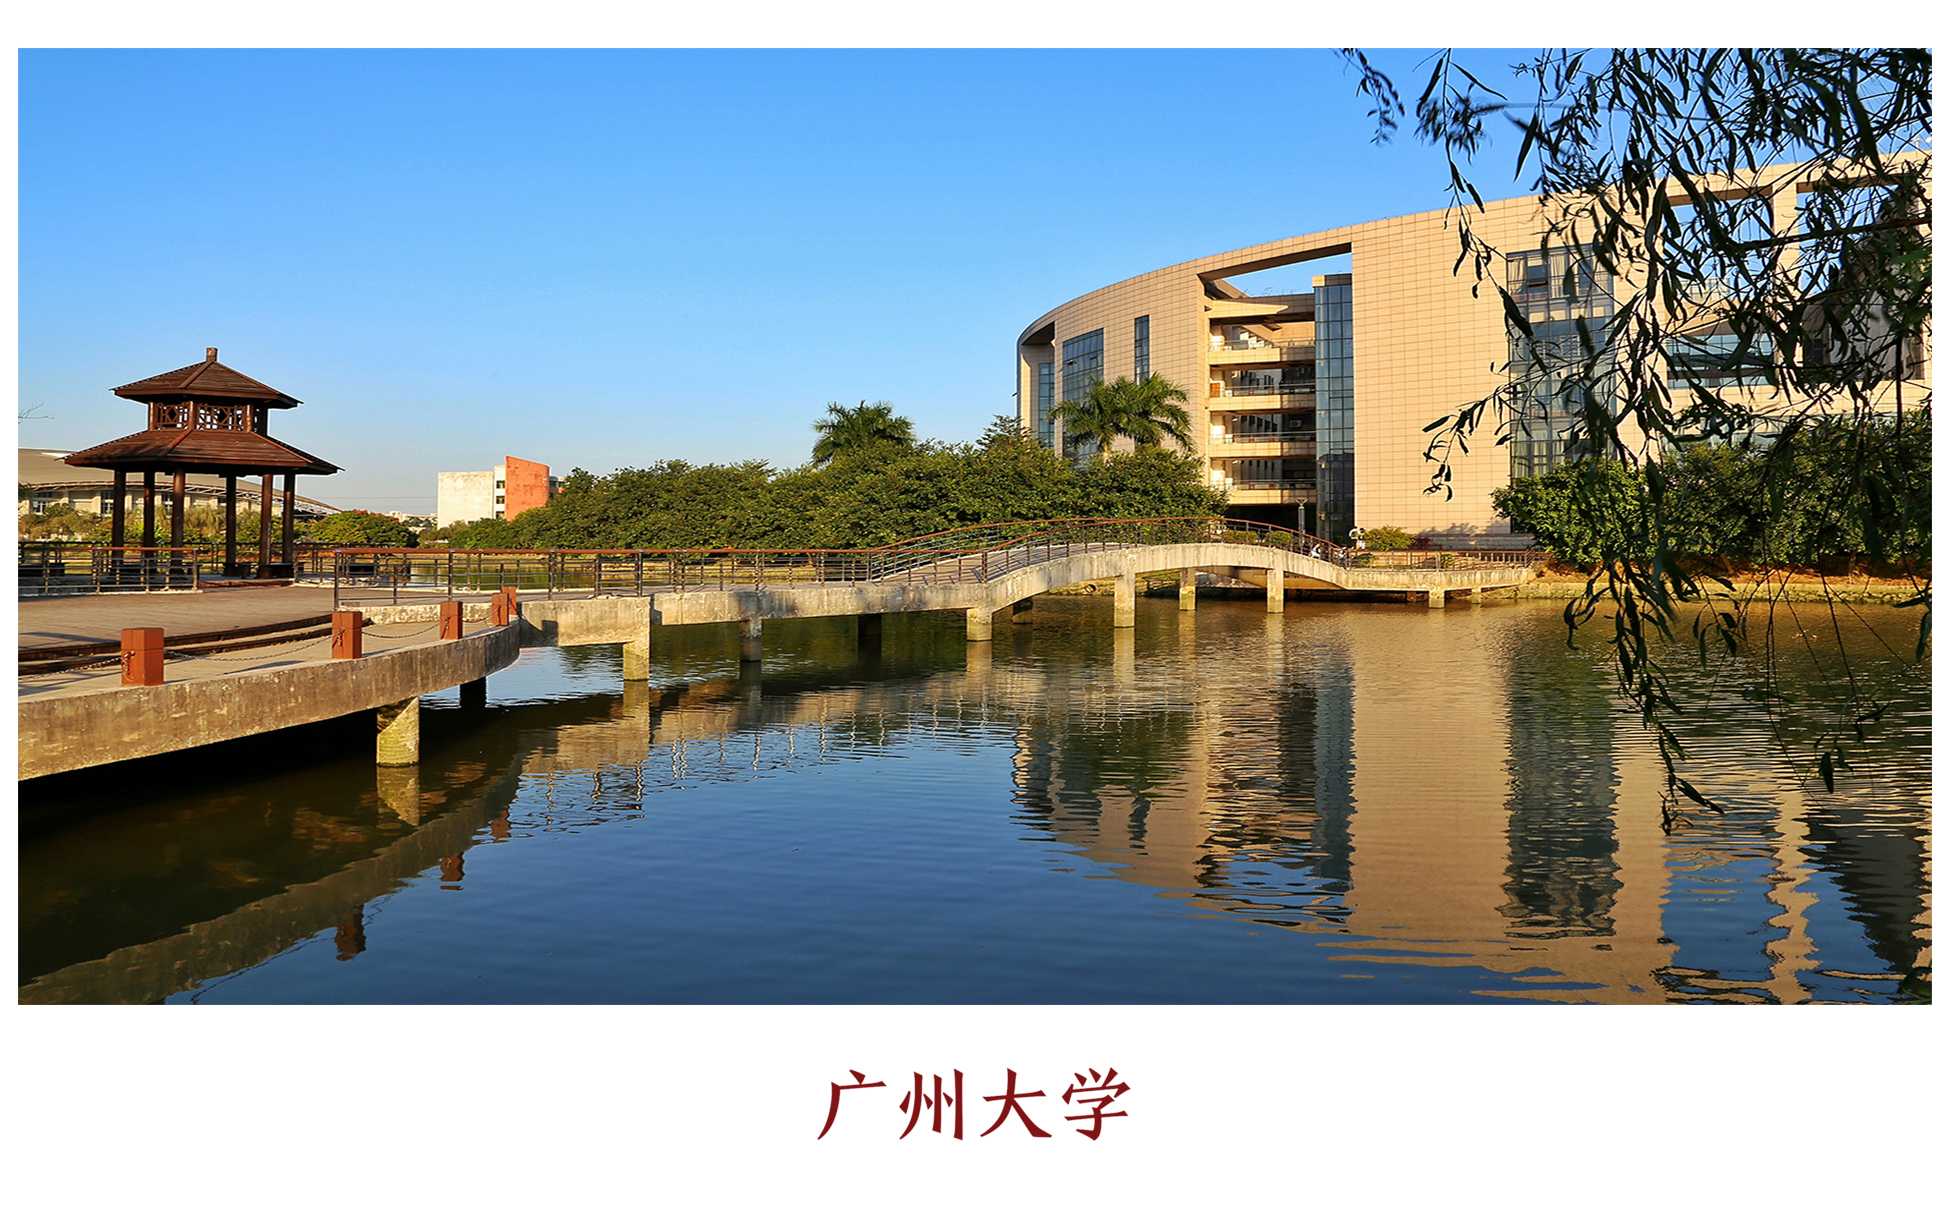 广州大学明信片校园风景系列